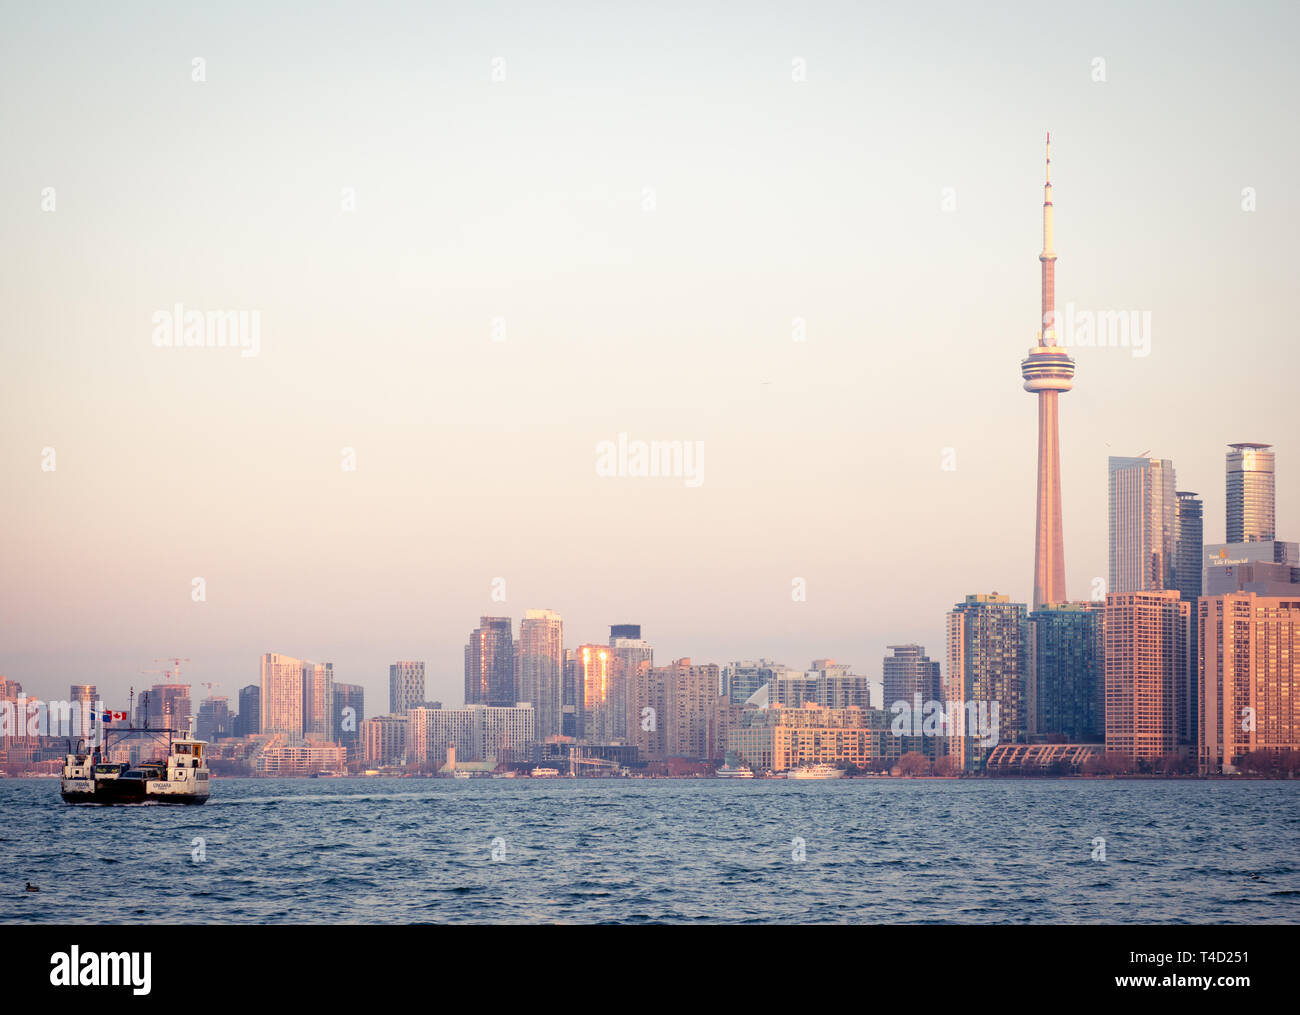 La Torre CN y el espectacular horizonte de Toronto, Ontario, Canadá, como puede verse en Ward's Island (Islas de Toronto) a través del Lago Ontario. Foto de stock